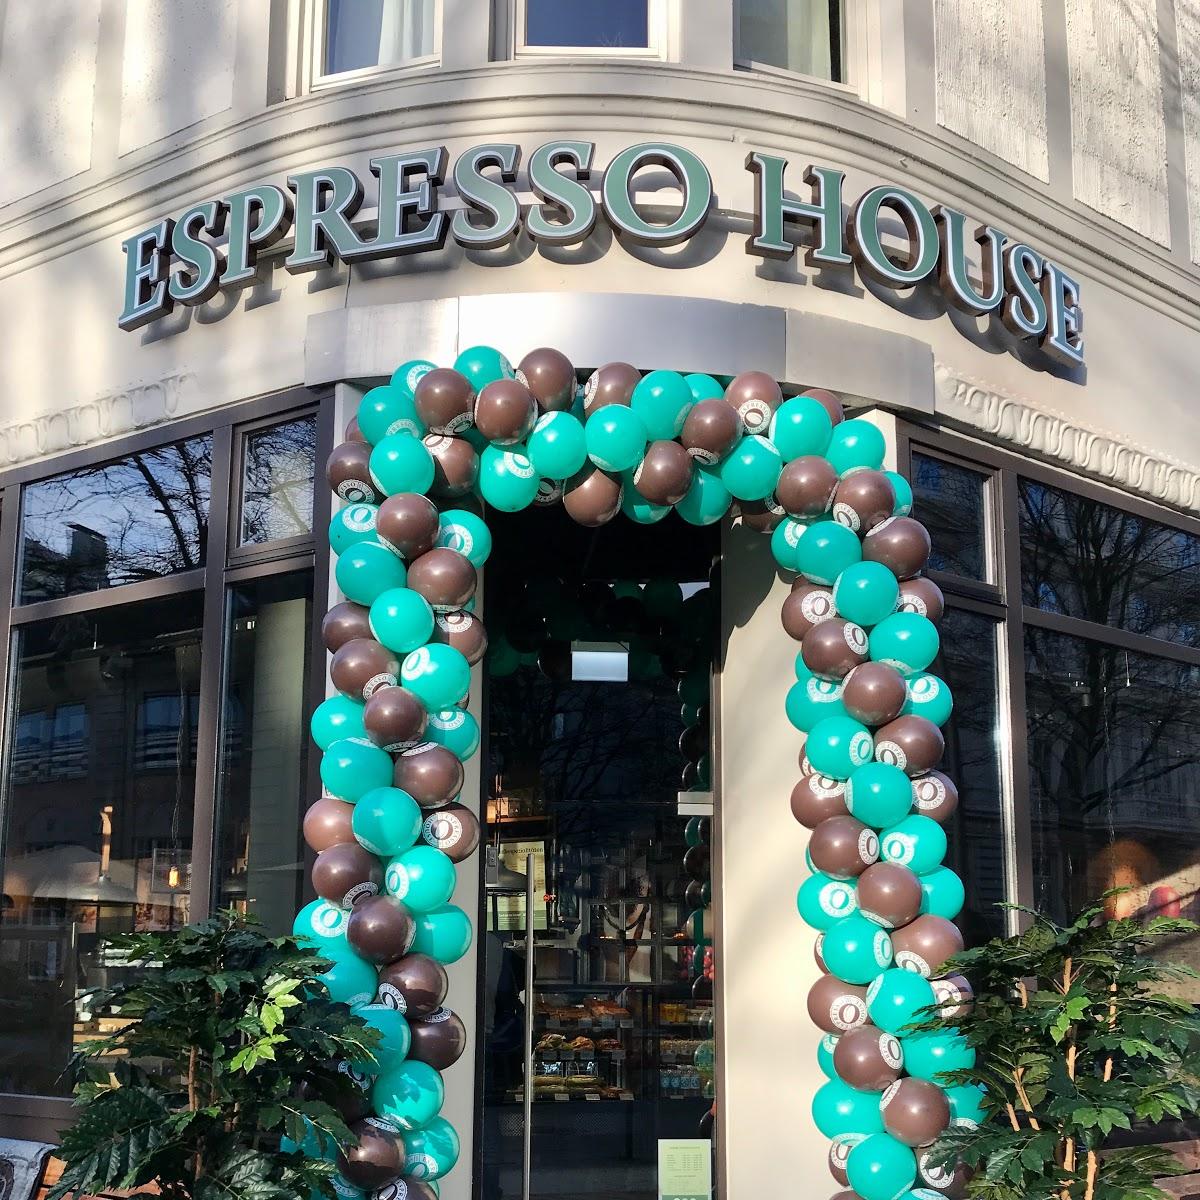 Restaurant "Espresso House" in Hamburg